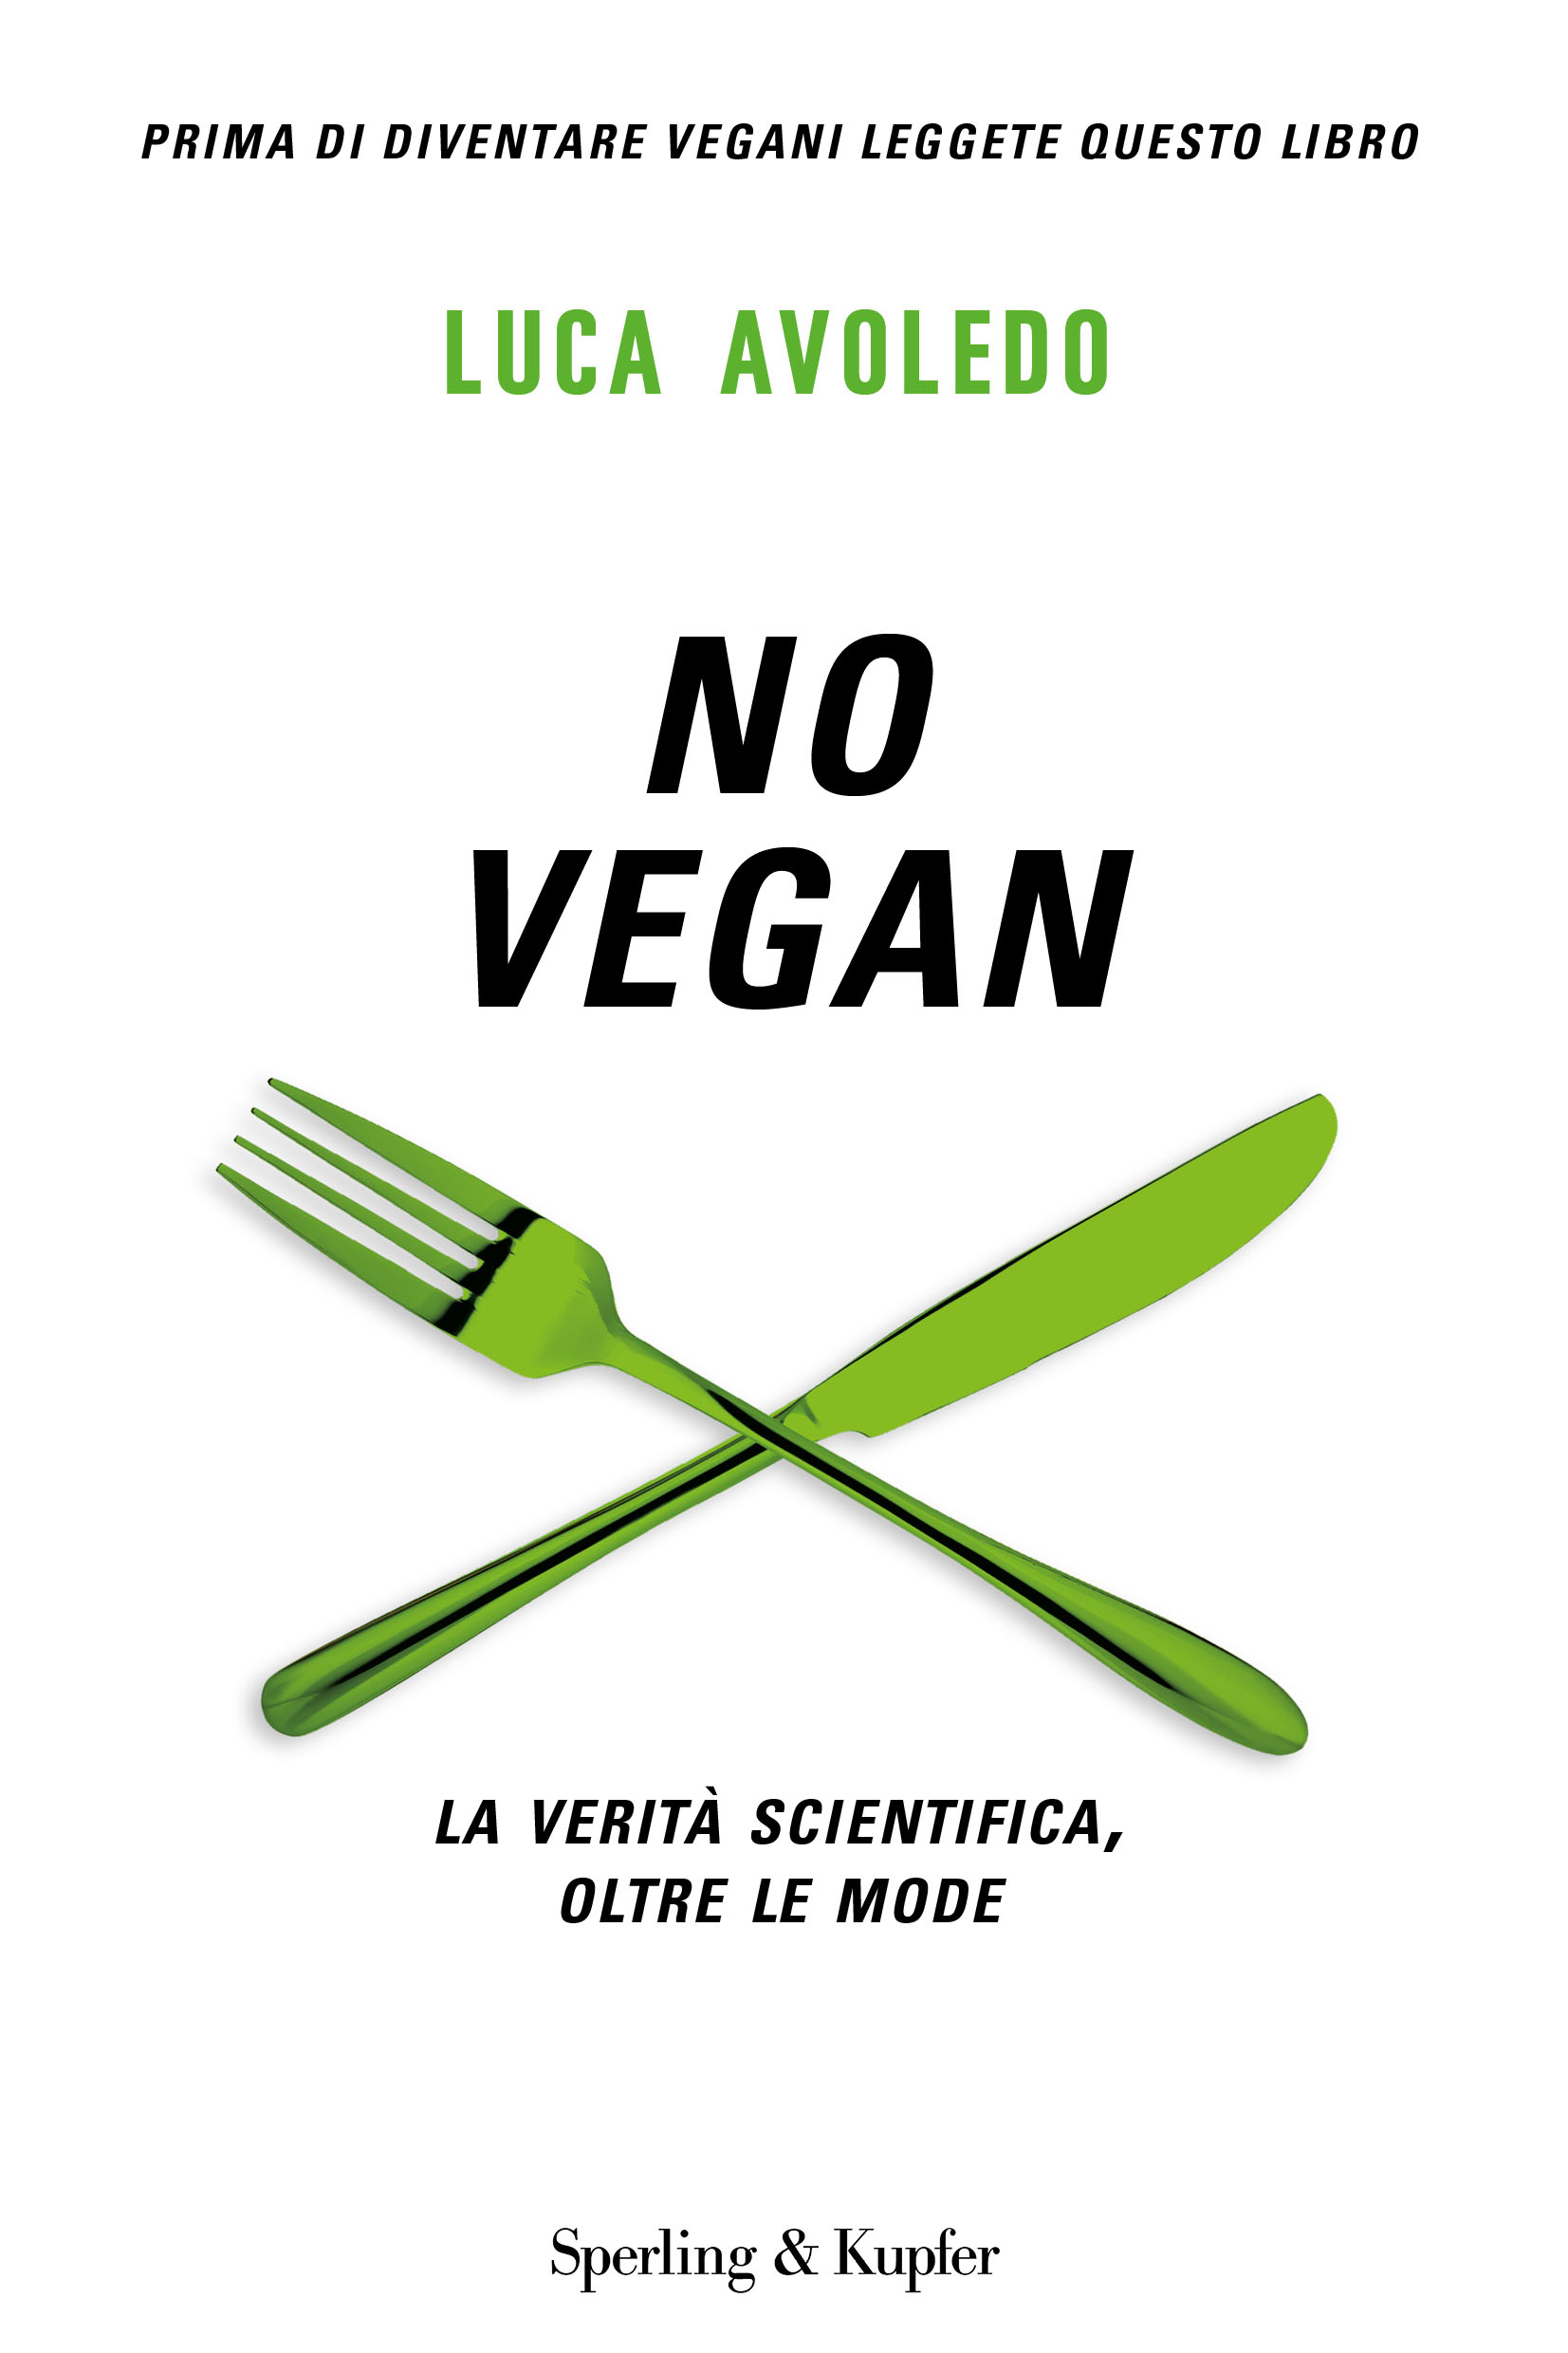 
            	Vegan o non vegan? NO VEGAN!